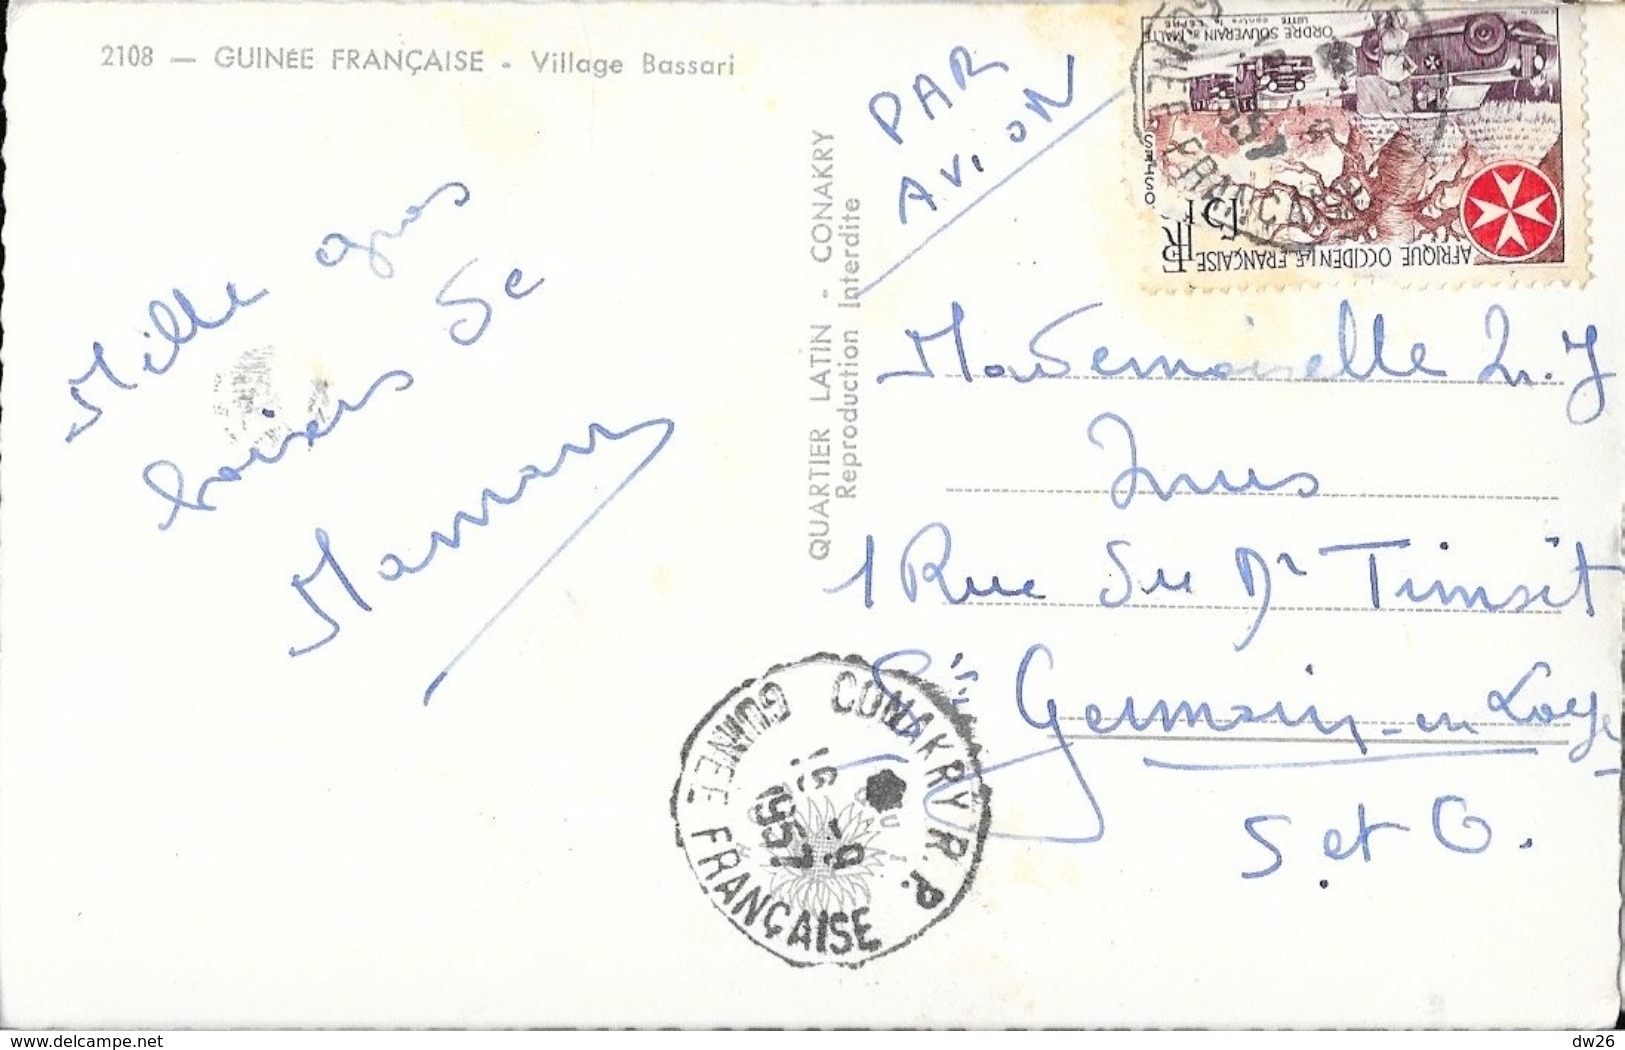 Guinée Française (A.O.F.) - Village Bassari - Edition Quartier Latin, Konakry - Guinea Francese